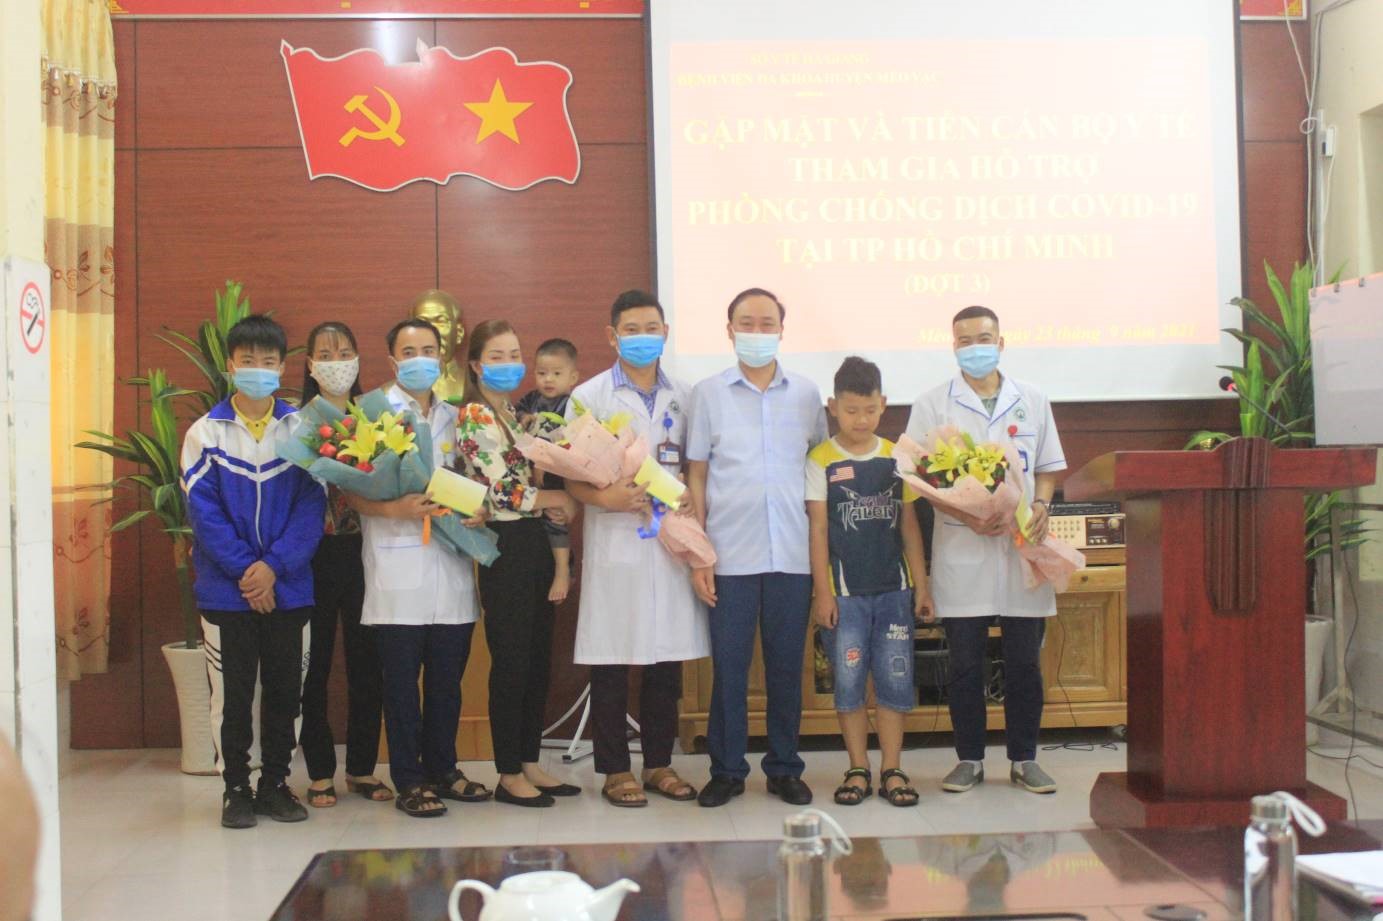 Mèo Vạc: Gặp mặt động viên cán bộ Y tế lên đường hỗ trợ thành phố Hồ Chí Minh chống dịch bệnh Covid-19